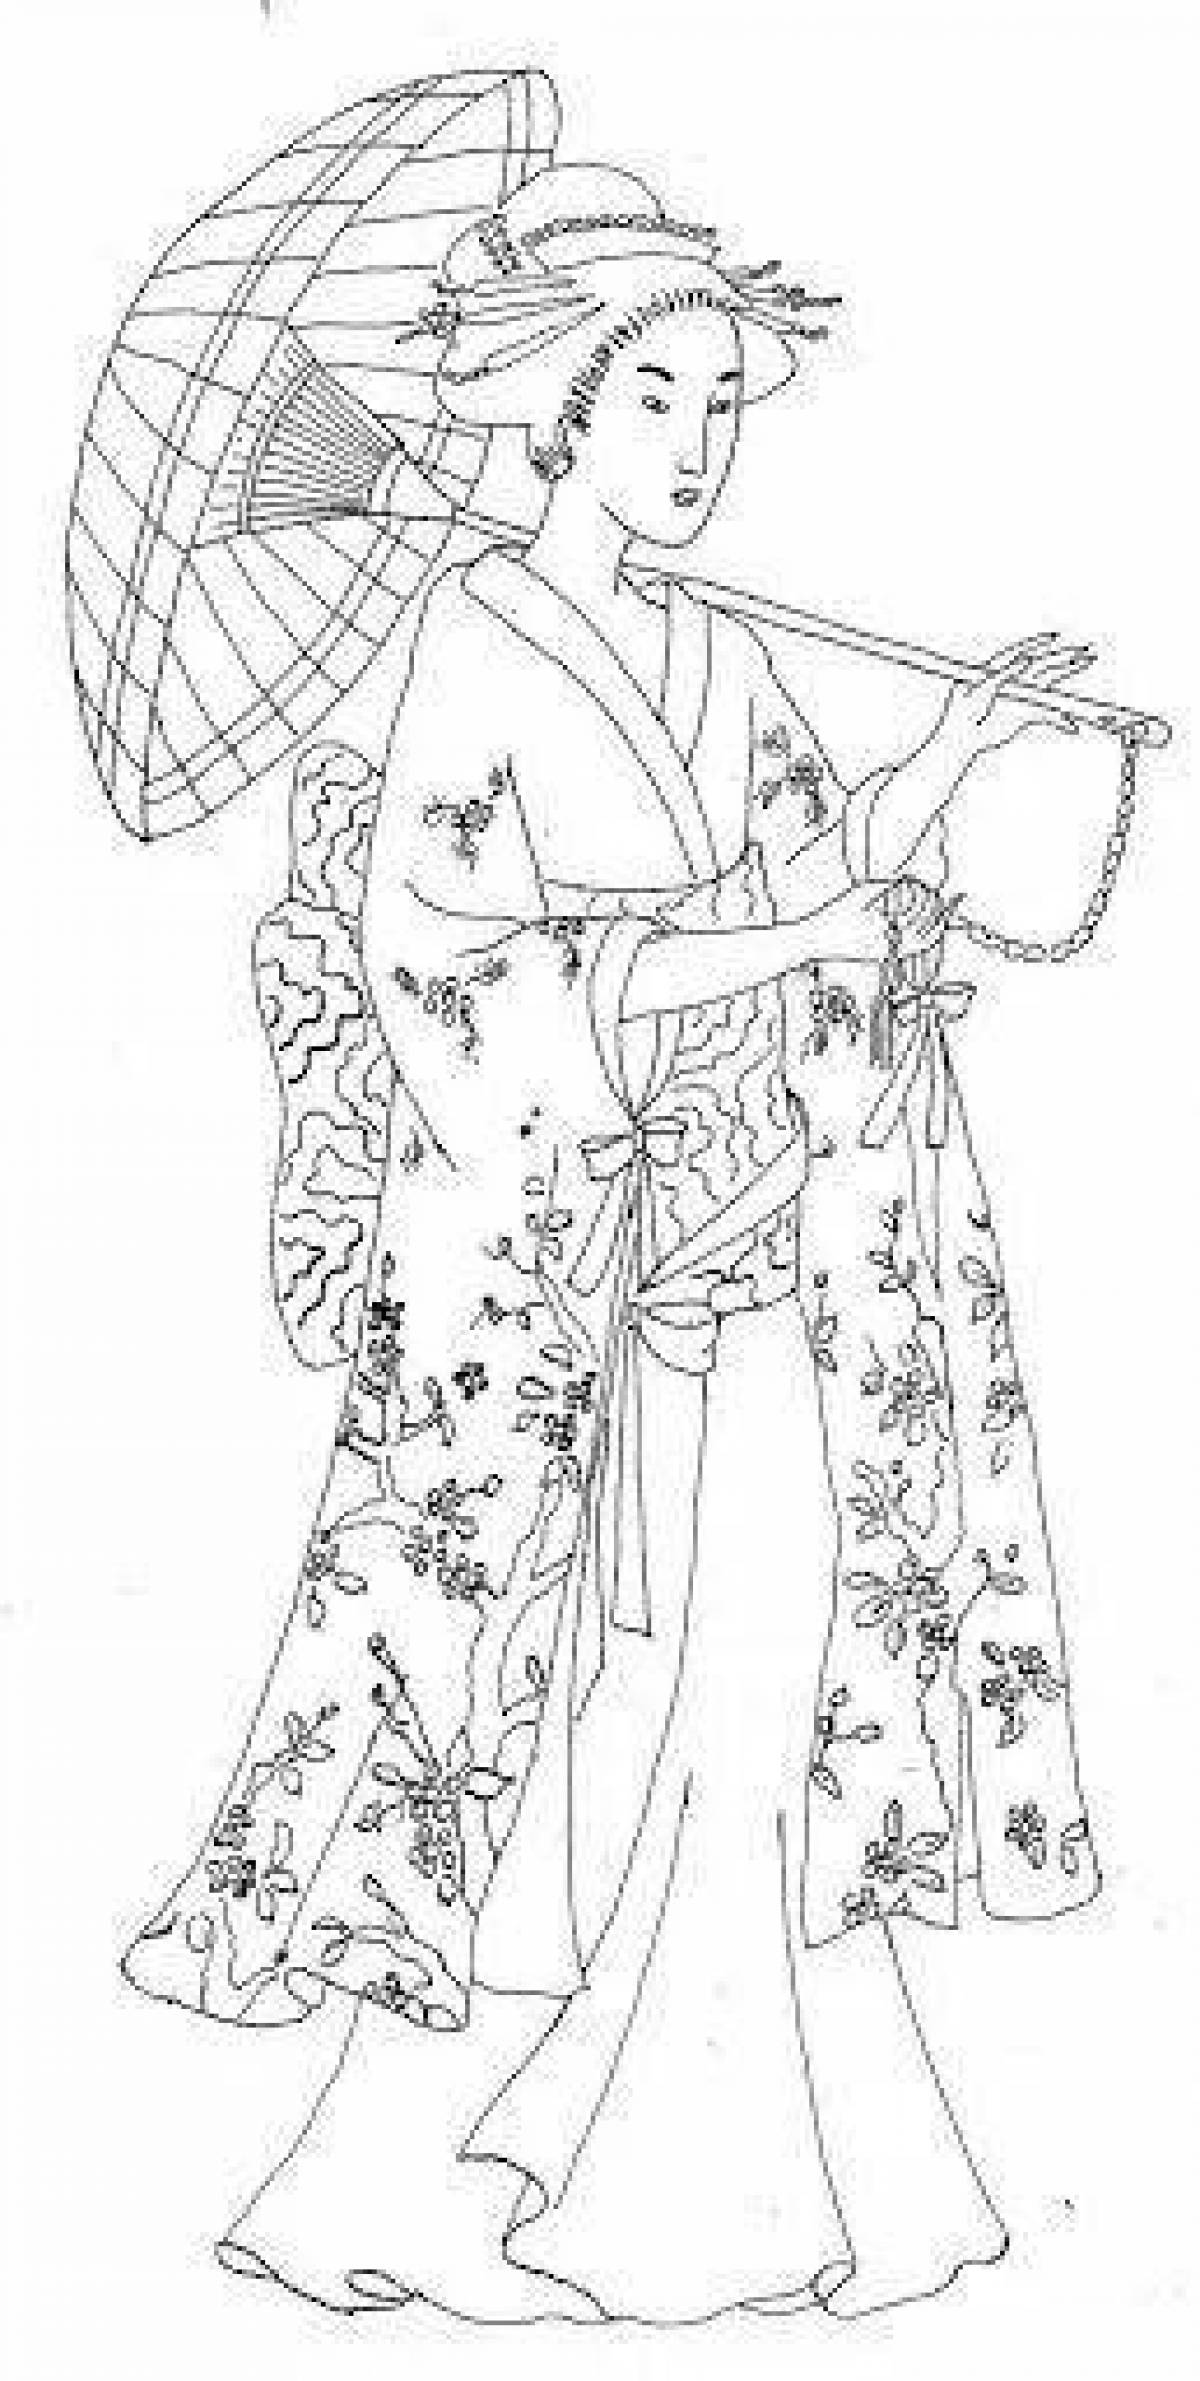 Glamorous Japanese woman in kimono